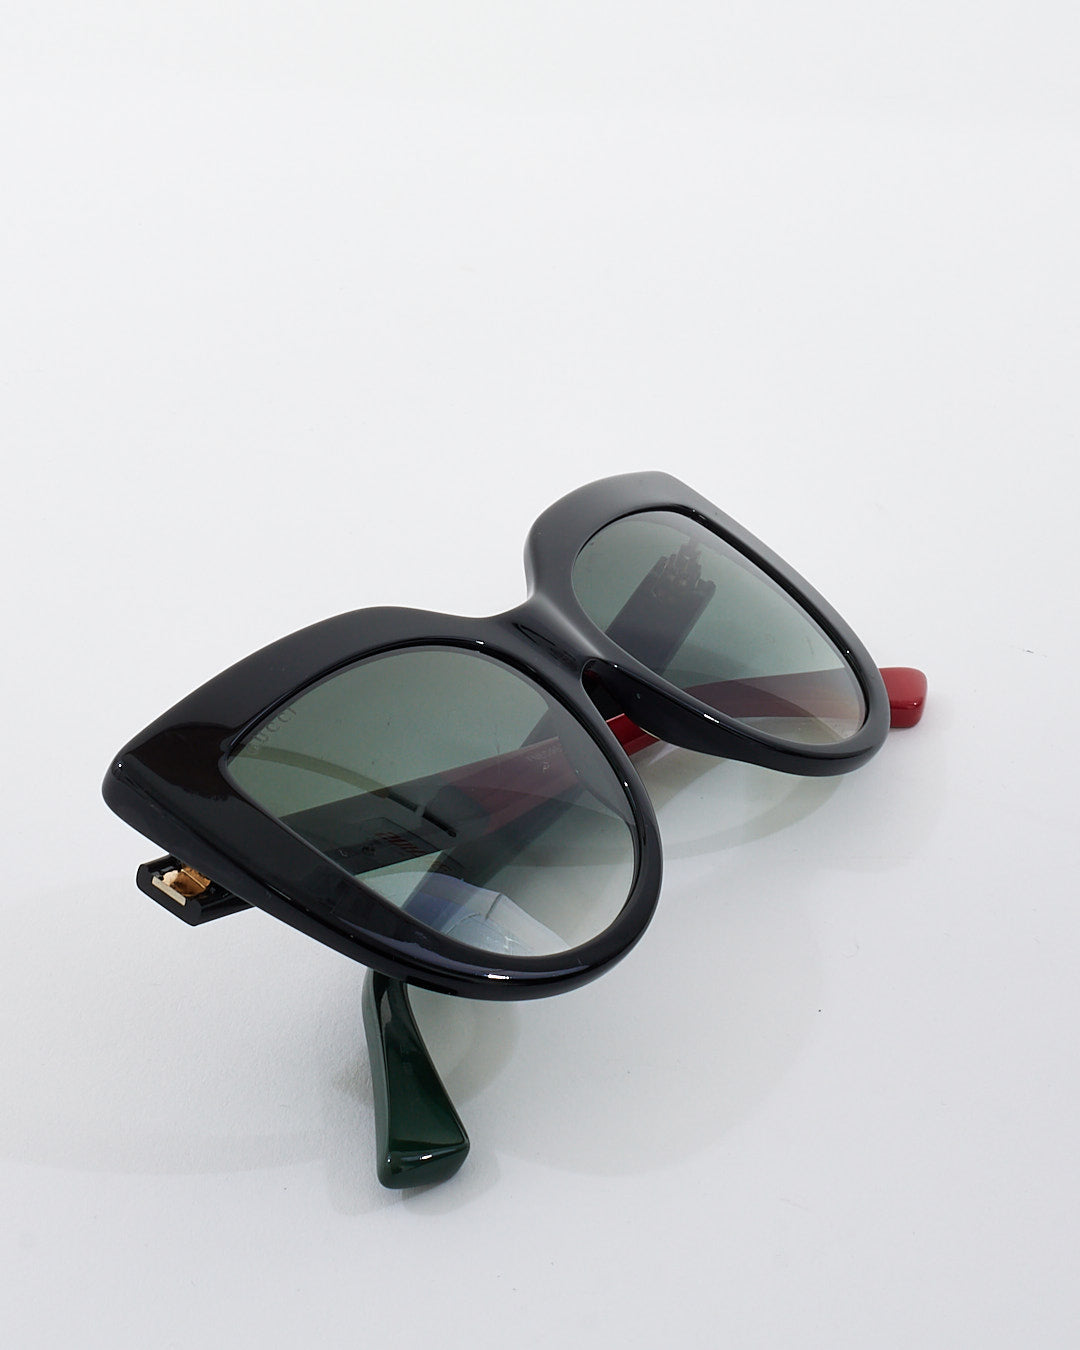 Gucci Black Acetate Cat Eye Frame Sunglasses